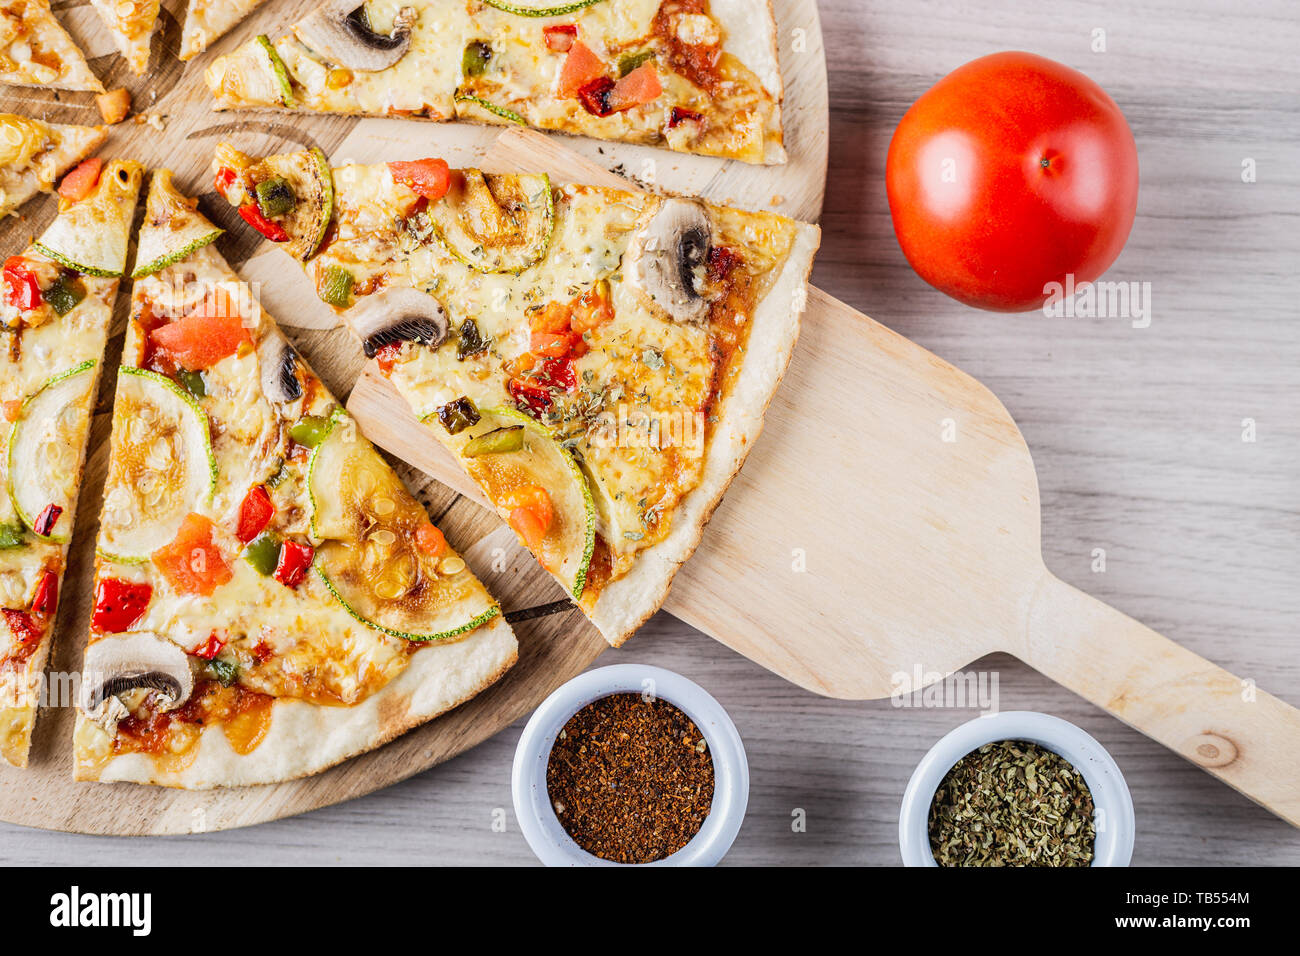 Zucchini vegan pizza with tomato, oregano and merken Stock Photo